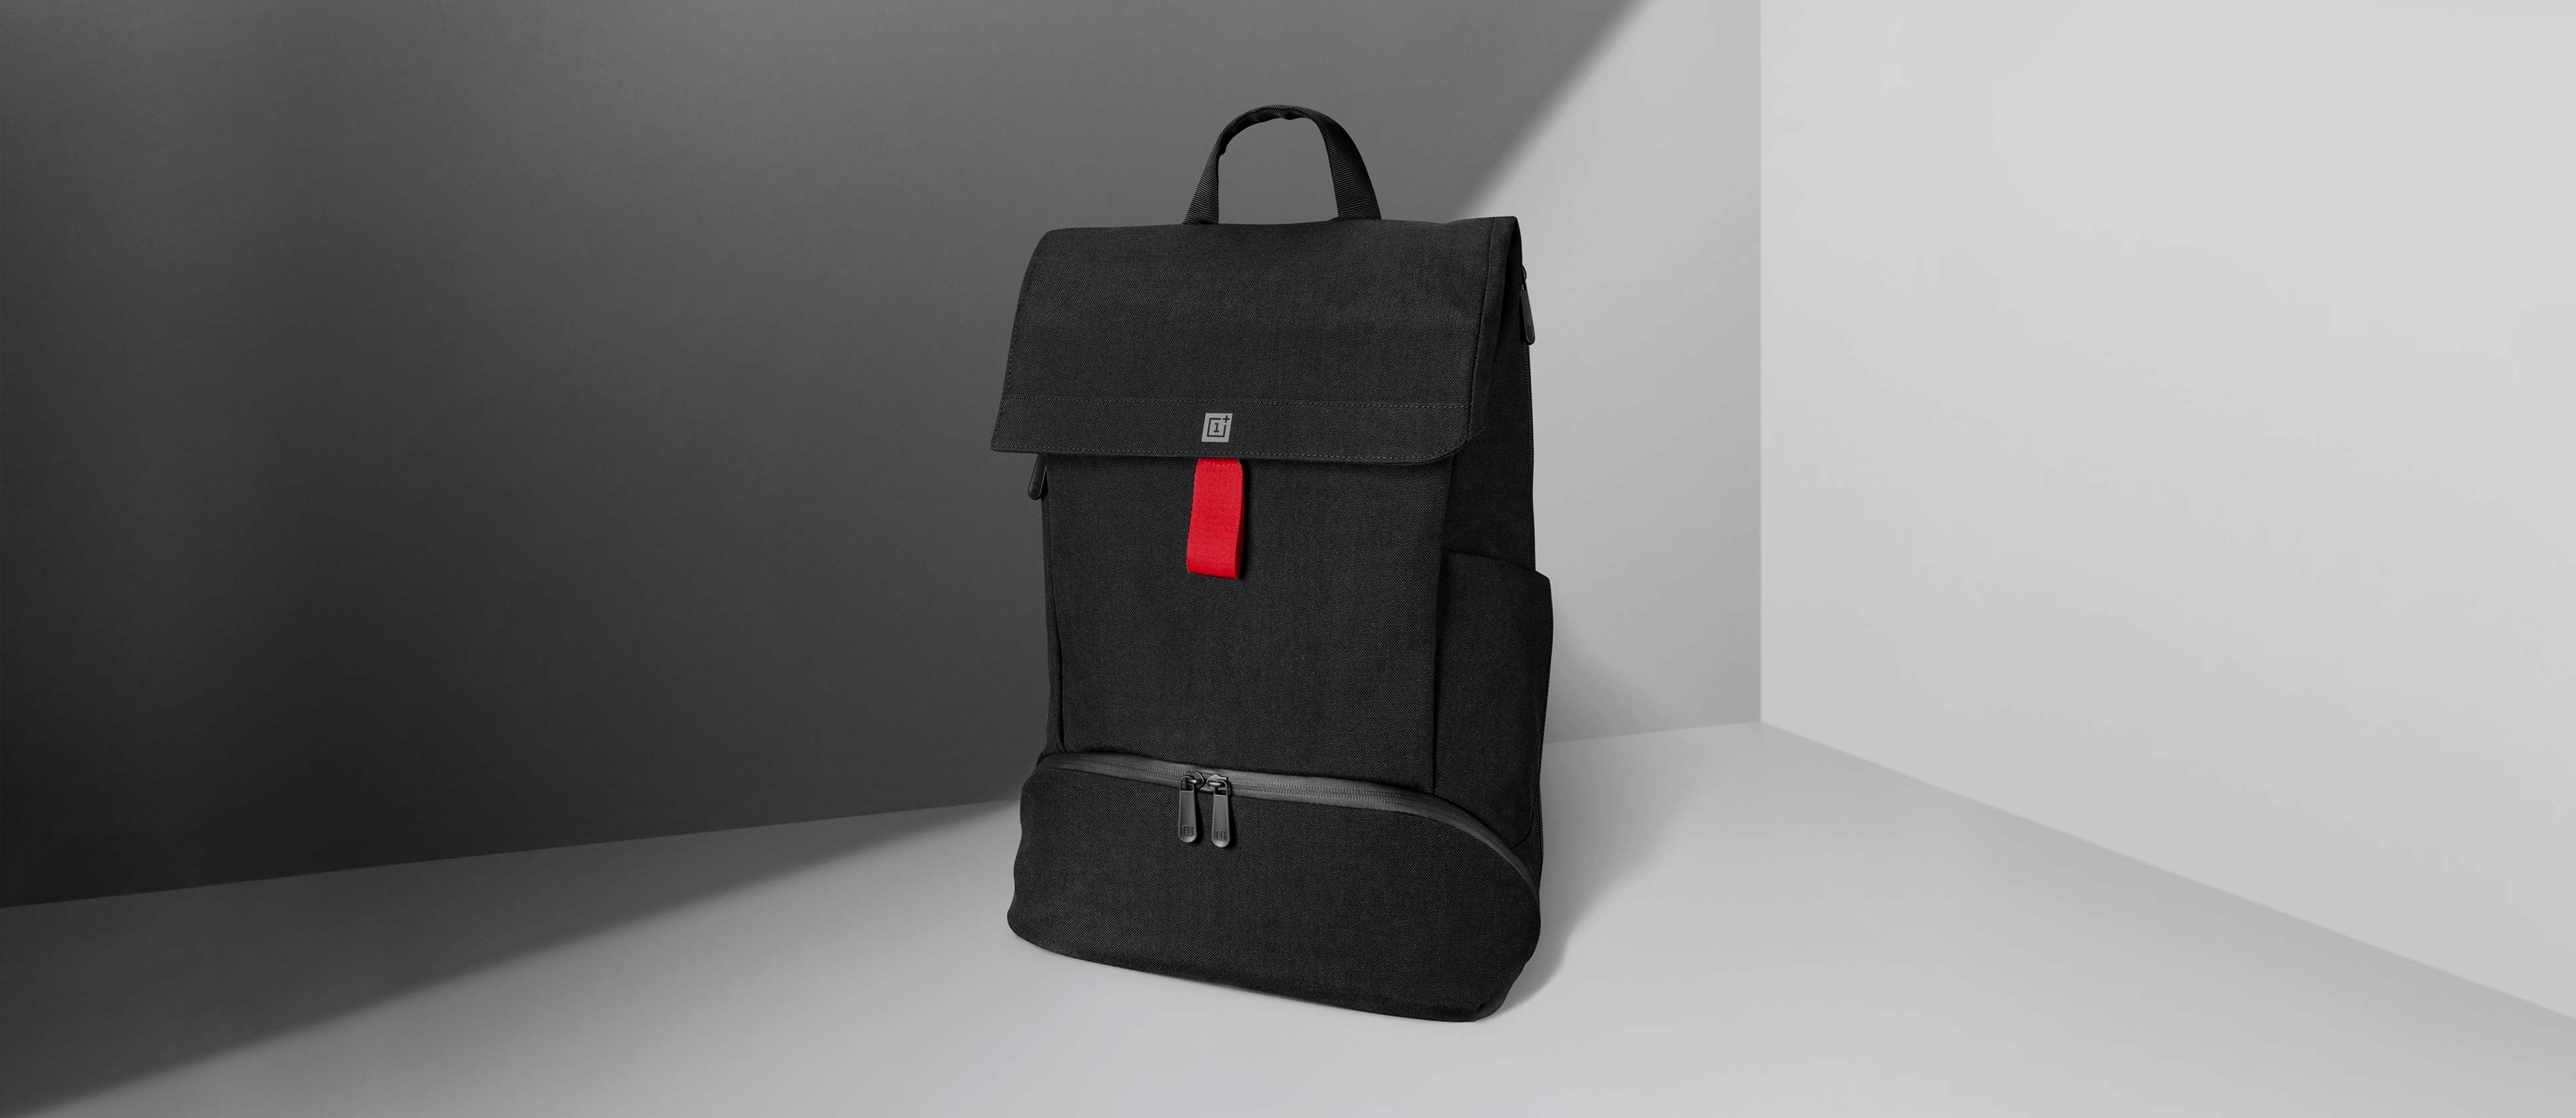 OnePlus Explorer sac à dos